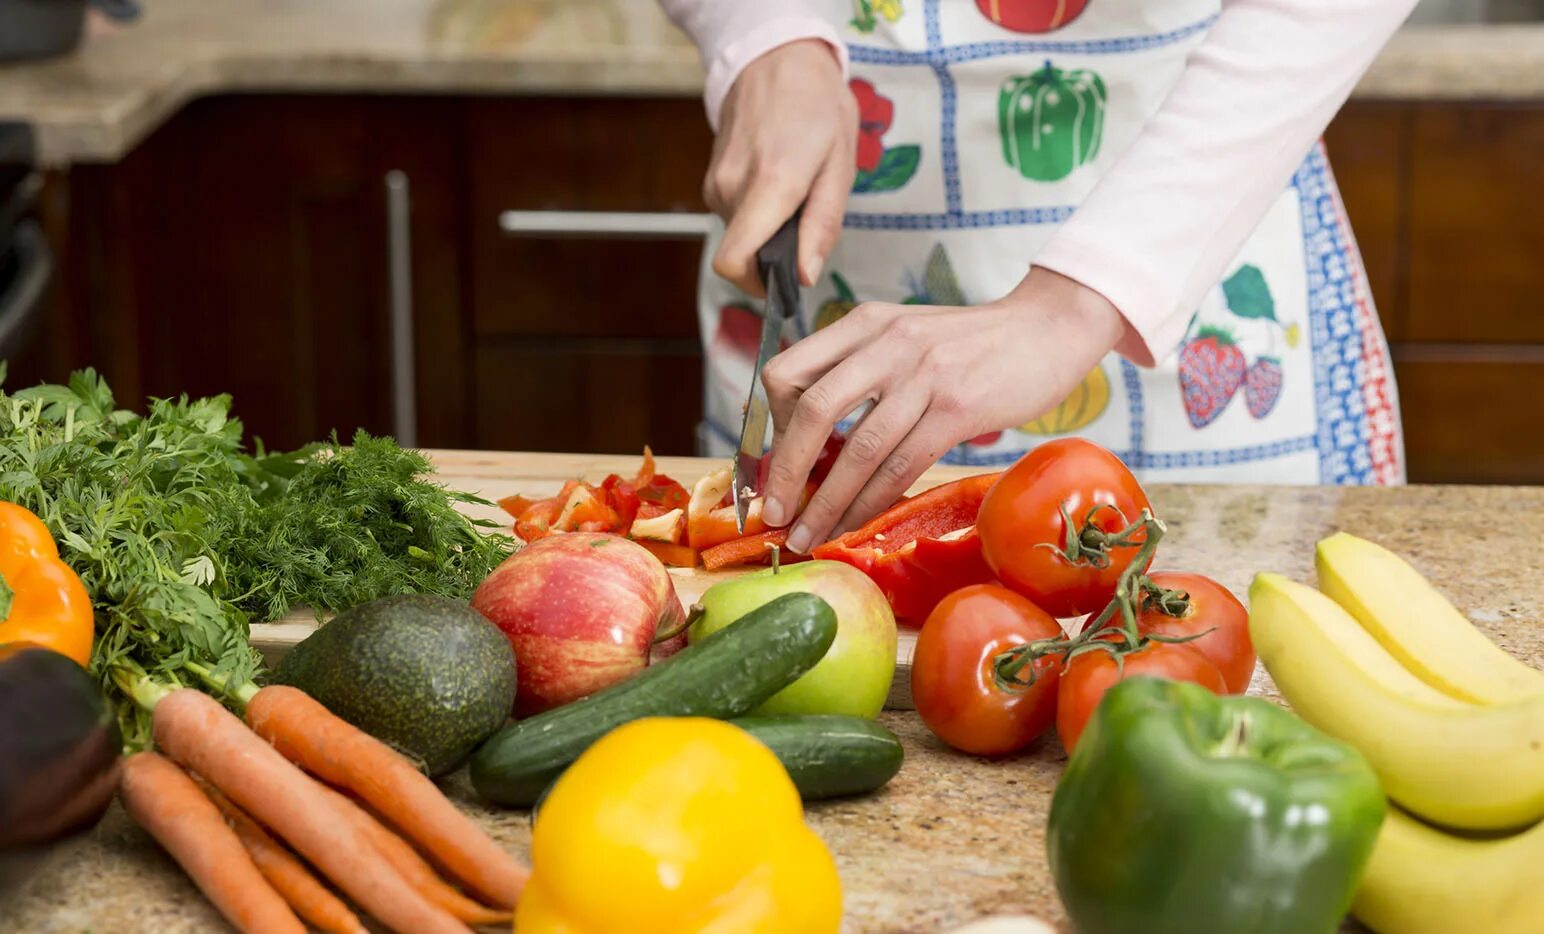 Cutting vegetables. Здоровье диабет. Холестериновая диета фото. Резать овощи картинка. Cut Vegetables.